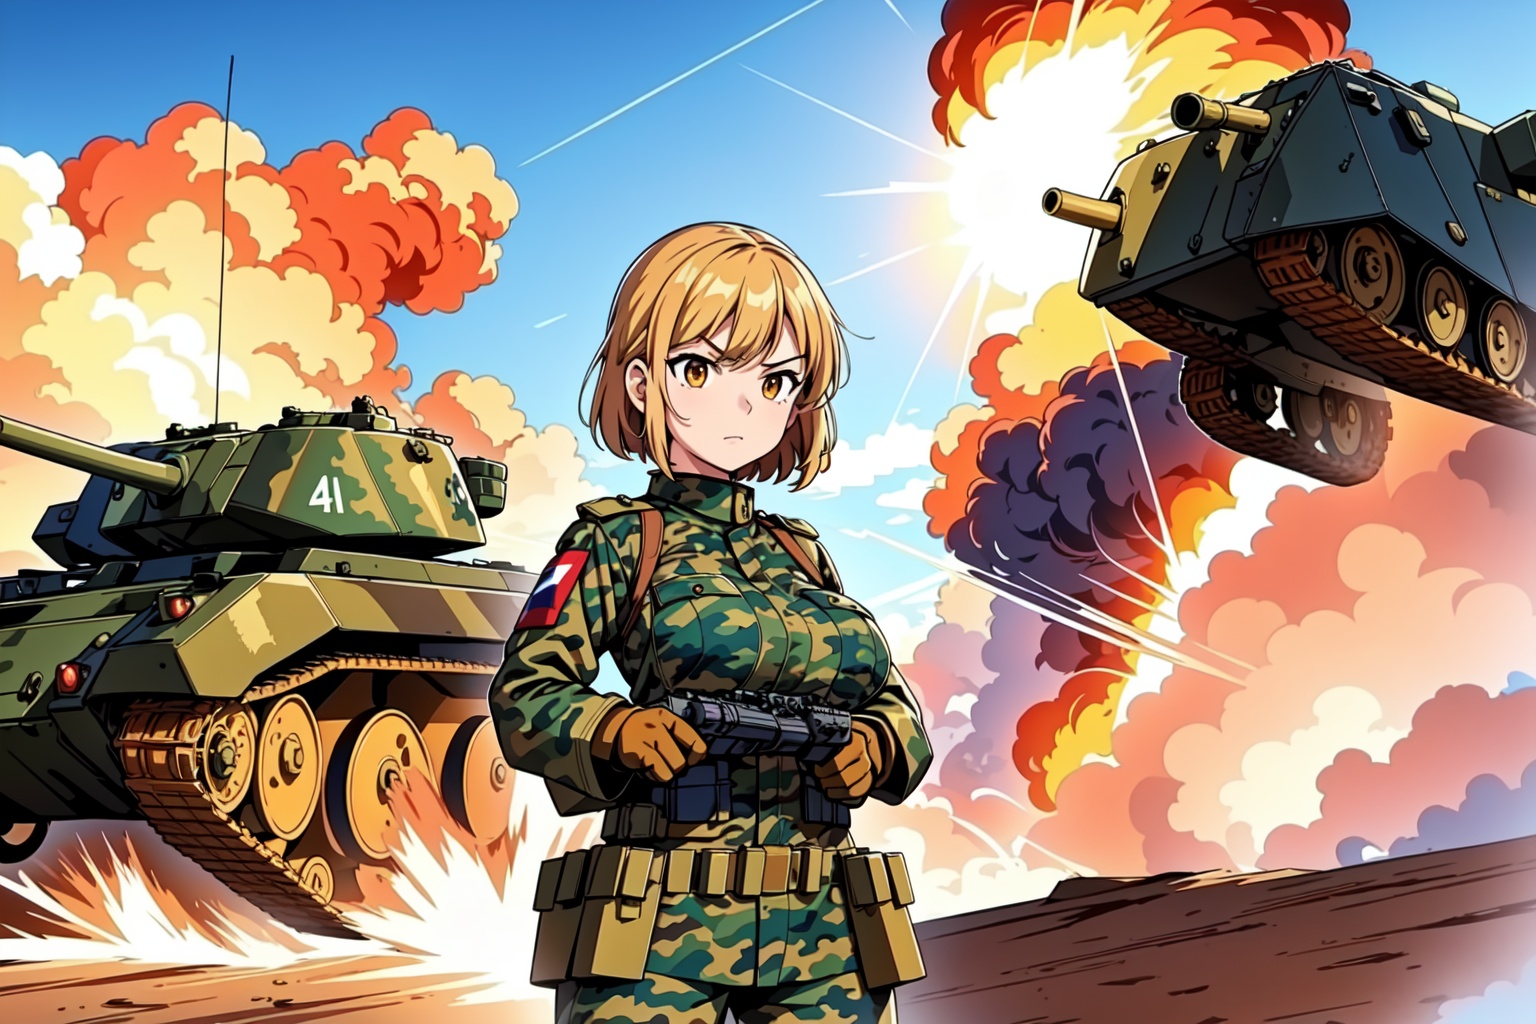 Panzerkampfwagen VI and tiger girl anime by Warkone666 on DeviantArt